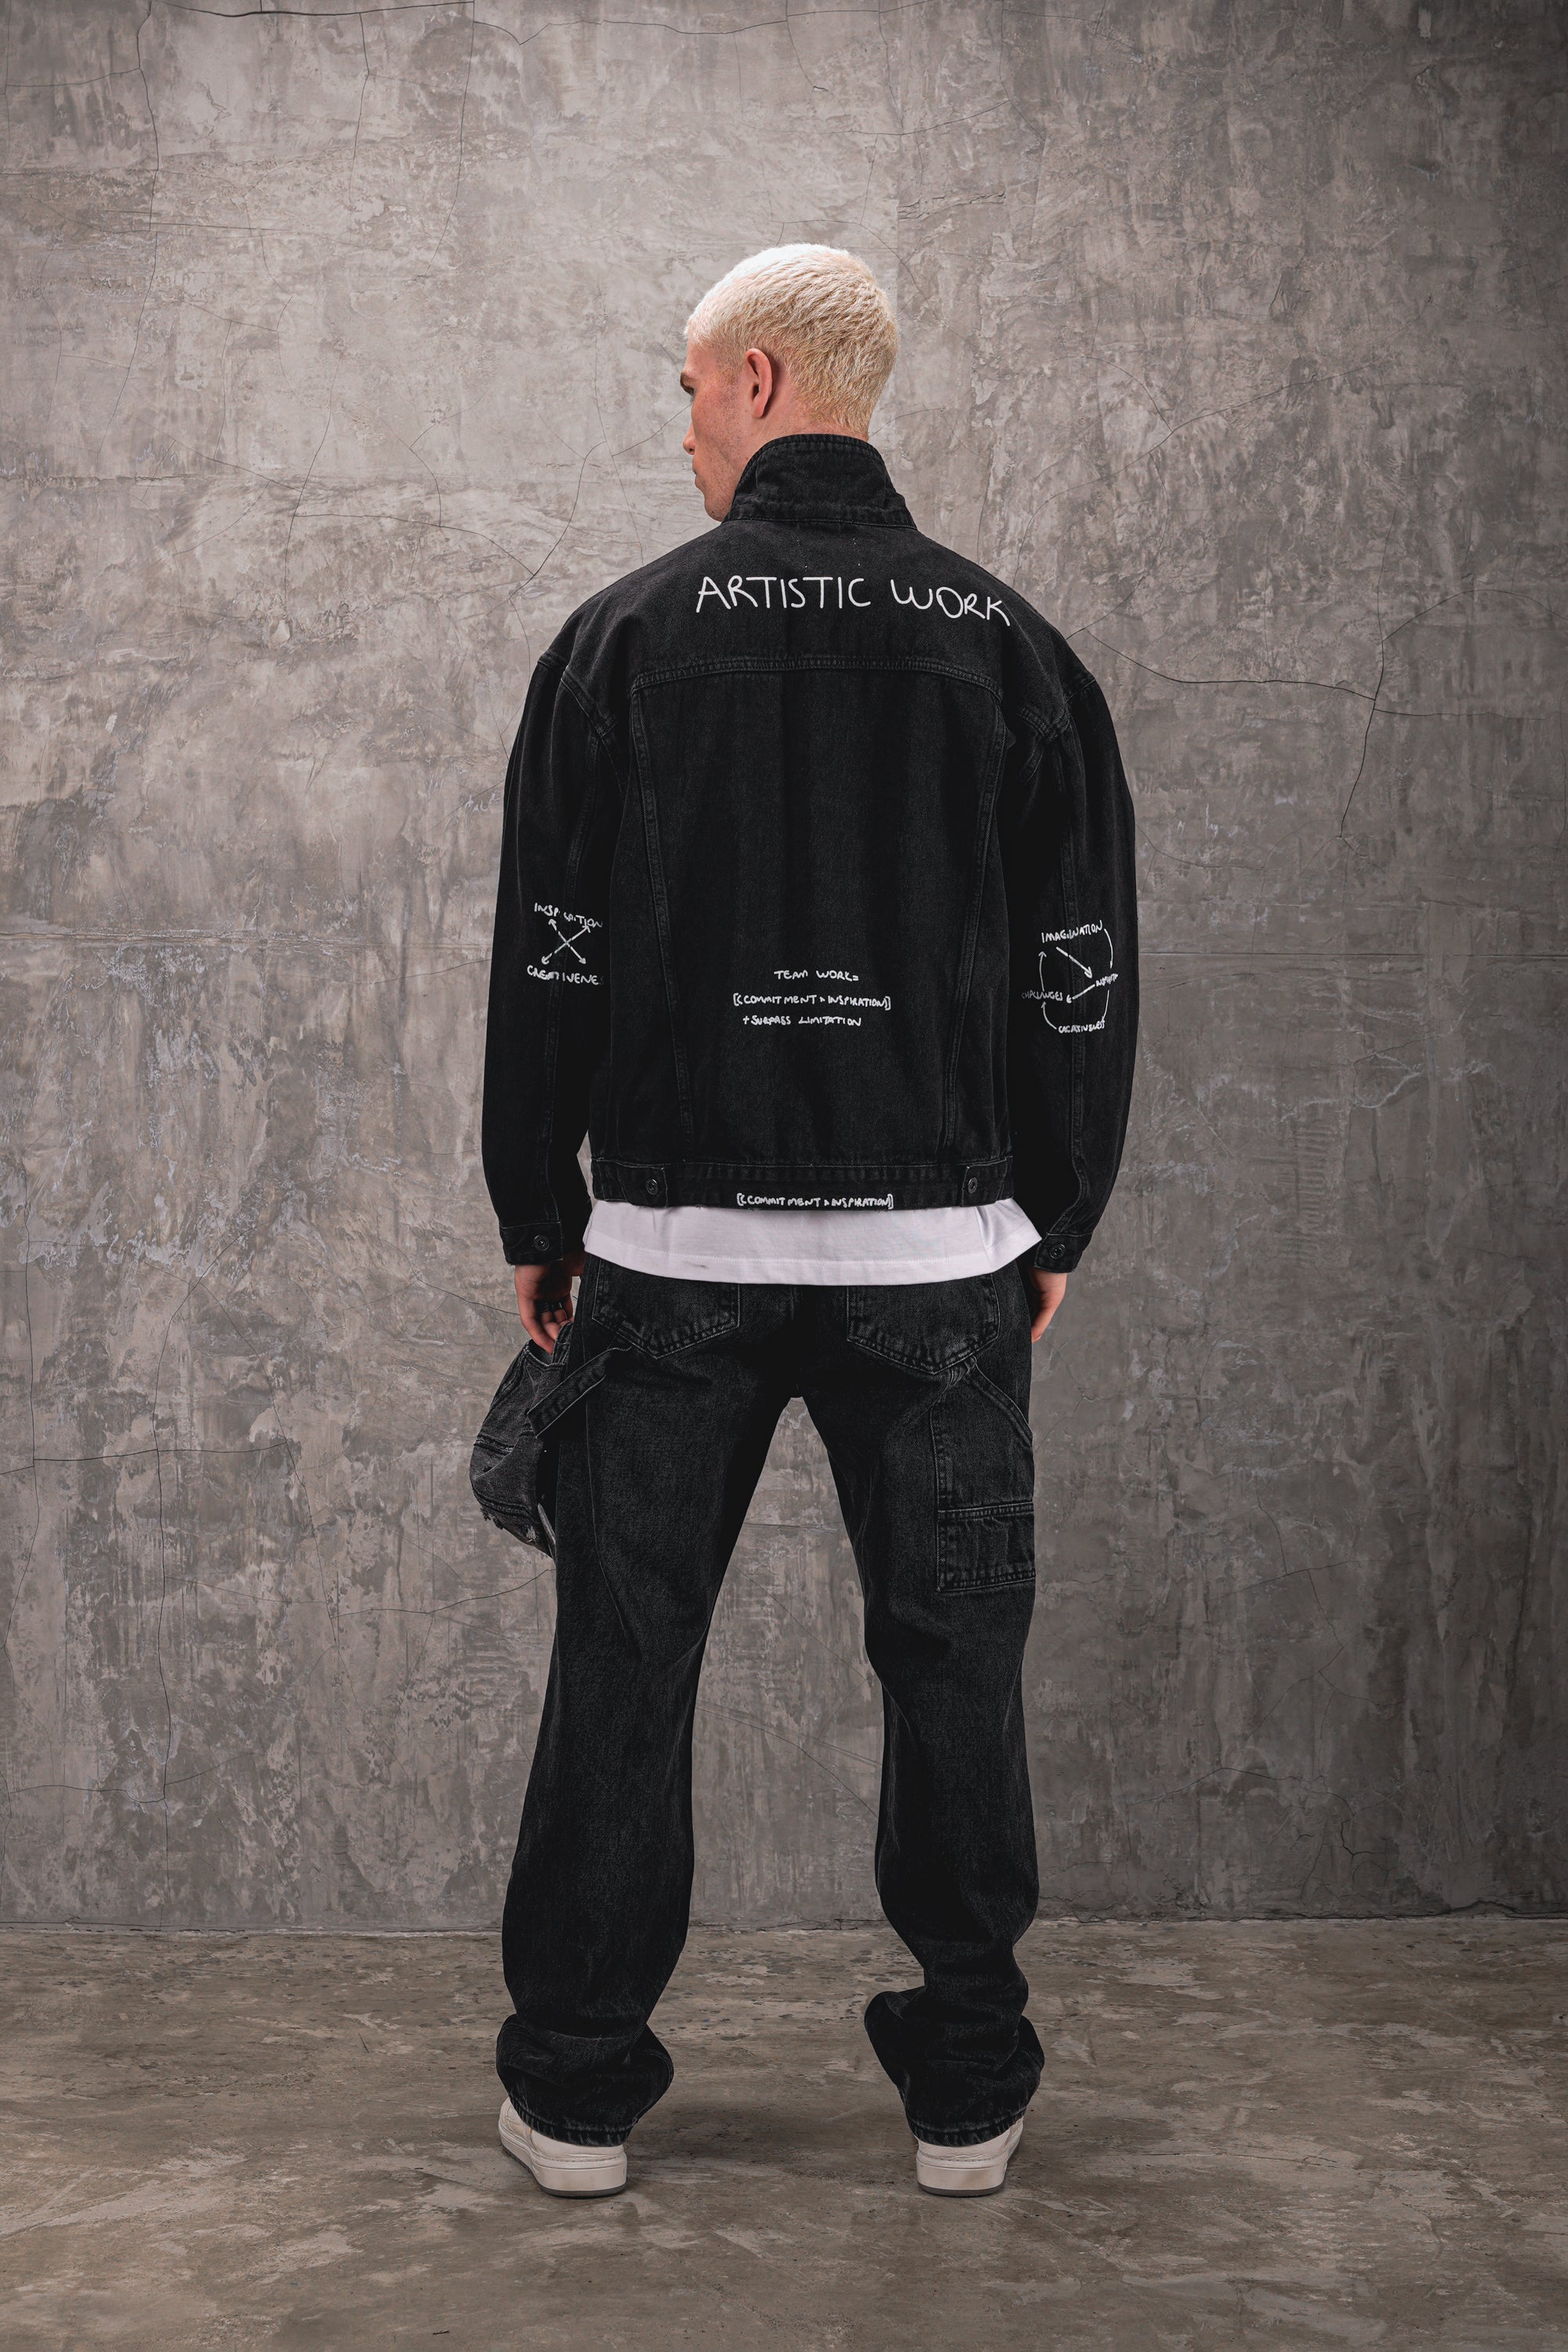 Premium Carpenter Black Jeans - UNEFFECTED STUDIOS® - JEANS - UNEFFECTED STUDIOS®